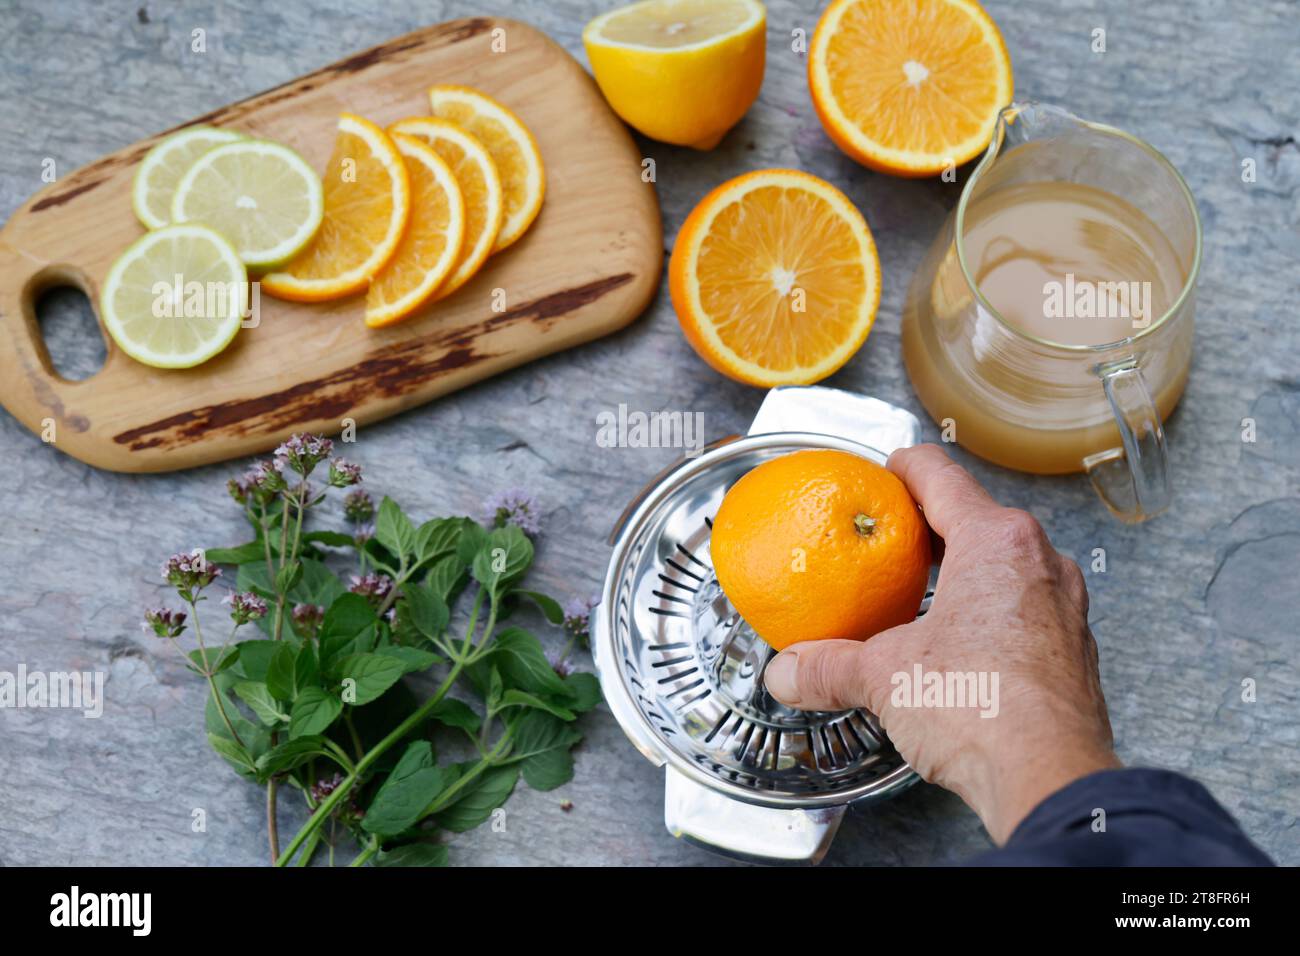 Eistee, EIS-Tee aus Kräutertee gemischt mit Apfelsafe, Saft von Orange, Saft von Zitrone, thé glacé, thé glacé Schritt 2 : Zutaten - Kräutertee, Apfelsaf Banque D'Images